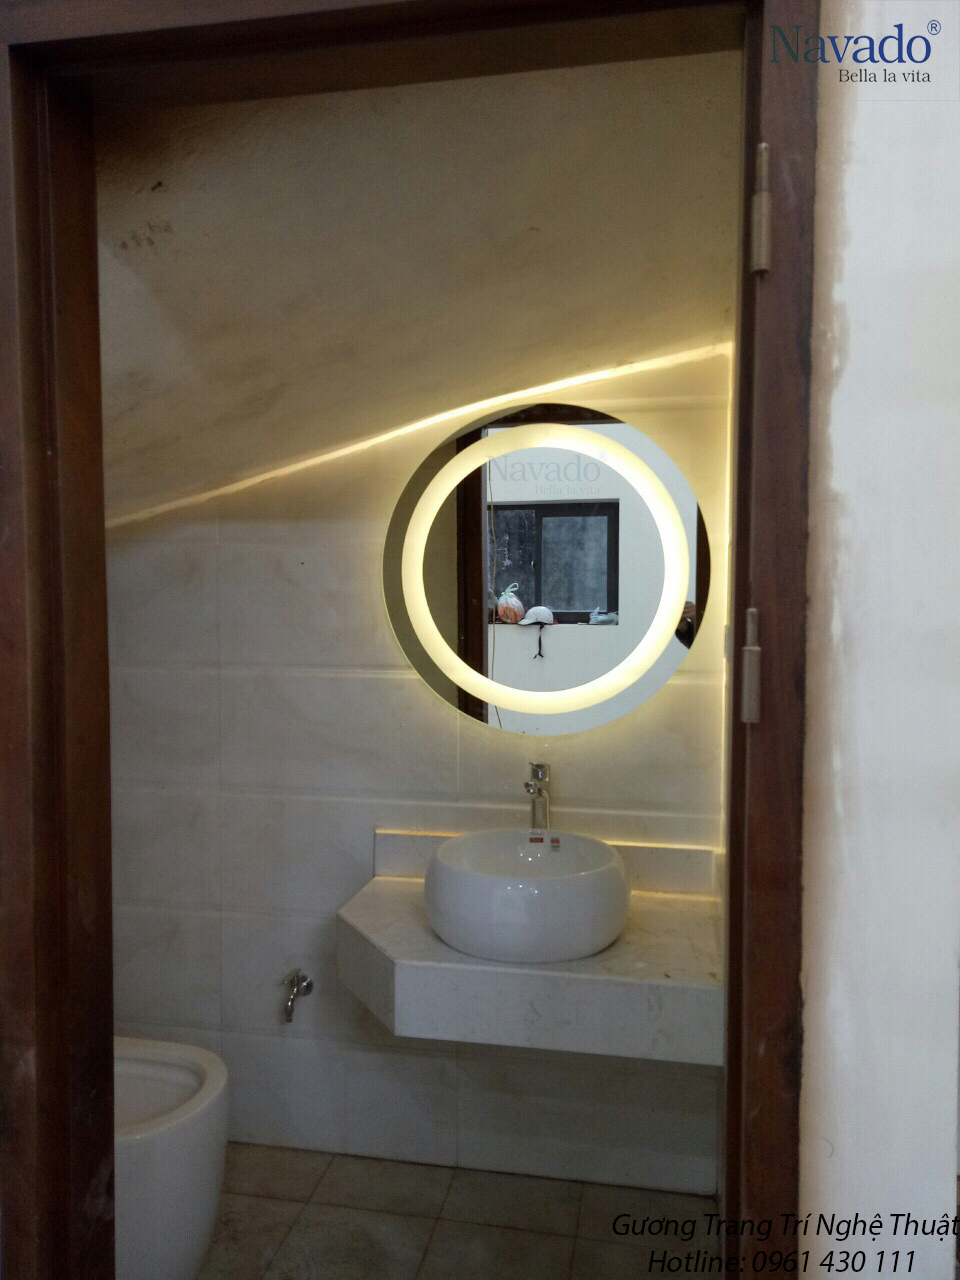 Gương nhà tắm đèn led là sản phẩm cao cấp gương navado.